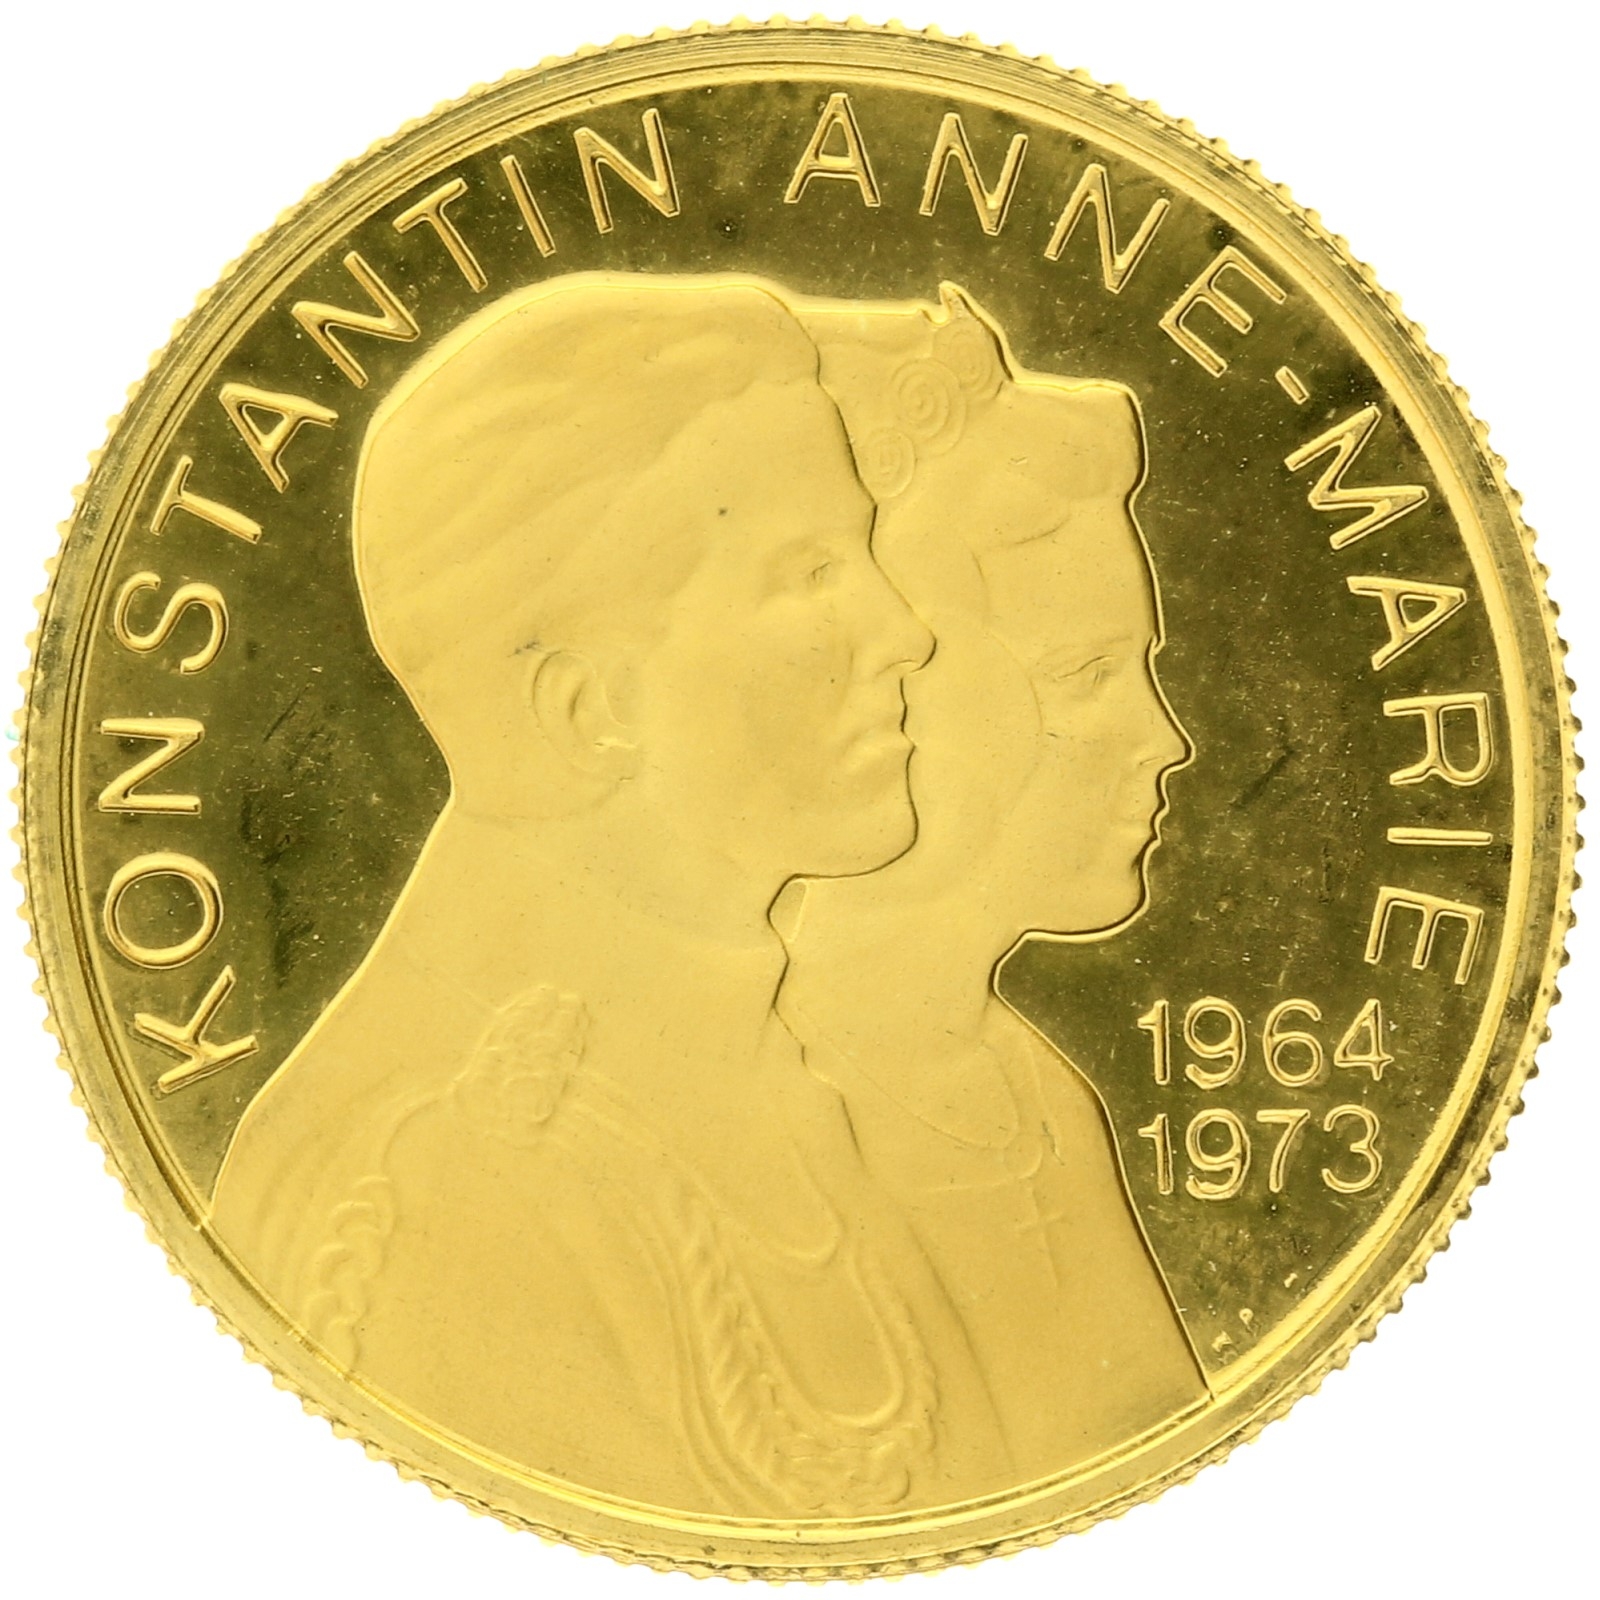 Denmark - Konstantin-Anne-Marie - 1973 - Medal (ducat)